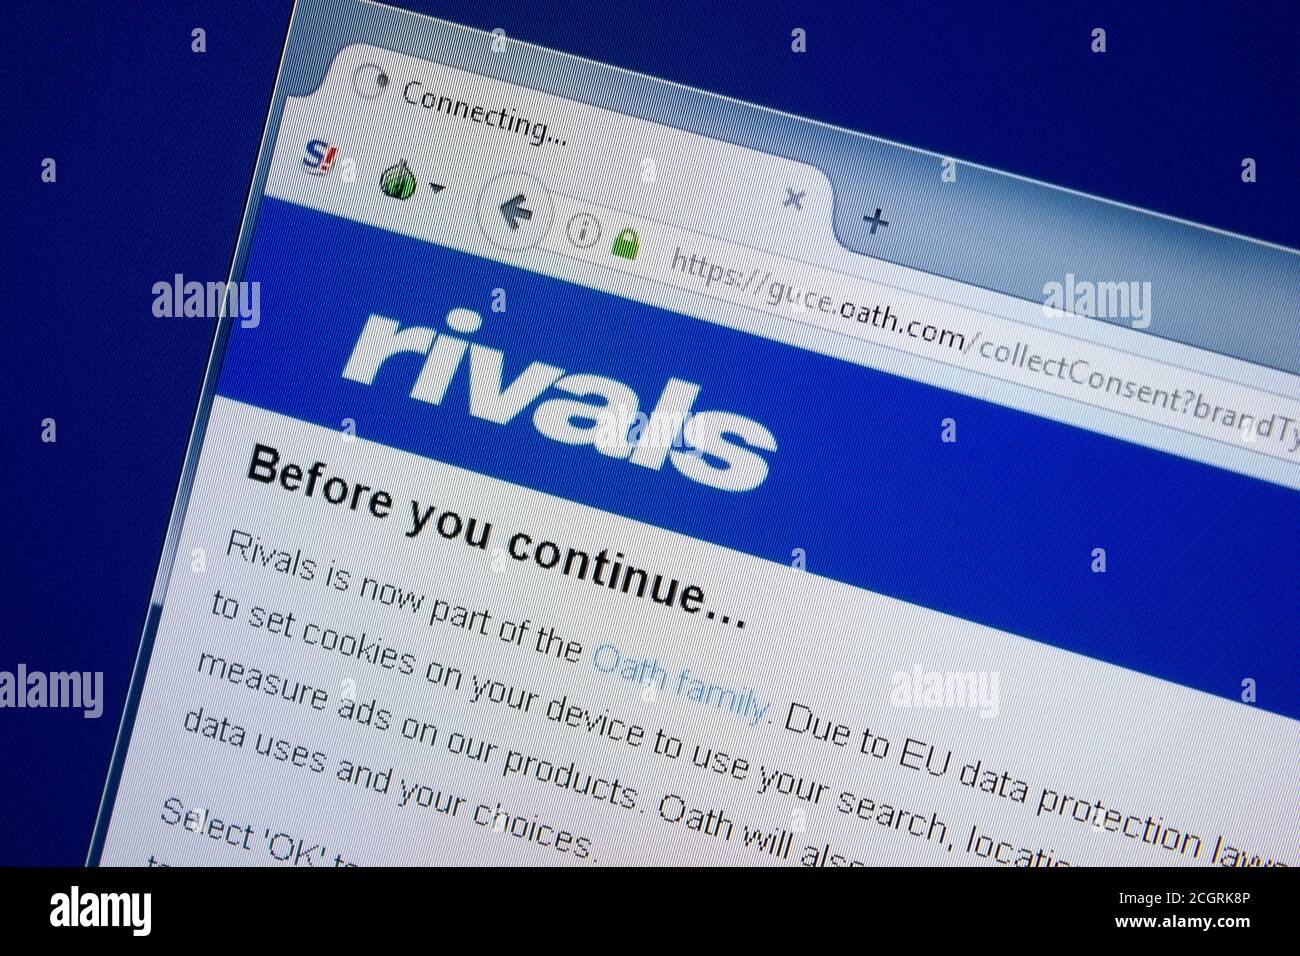 Ryazan, Russie - 09 septembre 2018: Page d'accueil du site de Rivals sur l'affichage de PC, url - Rivals. Banque D'Images